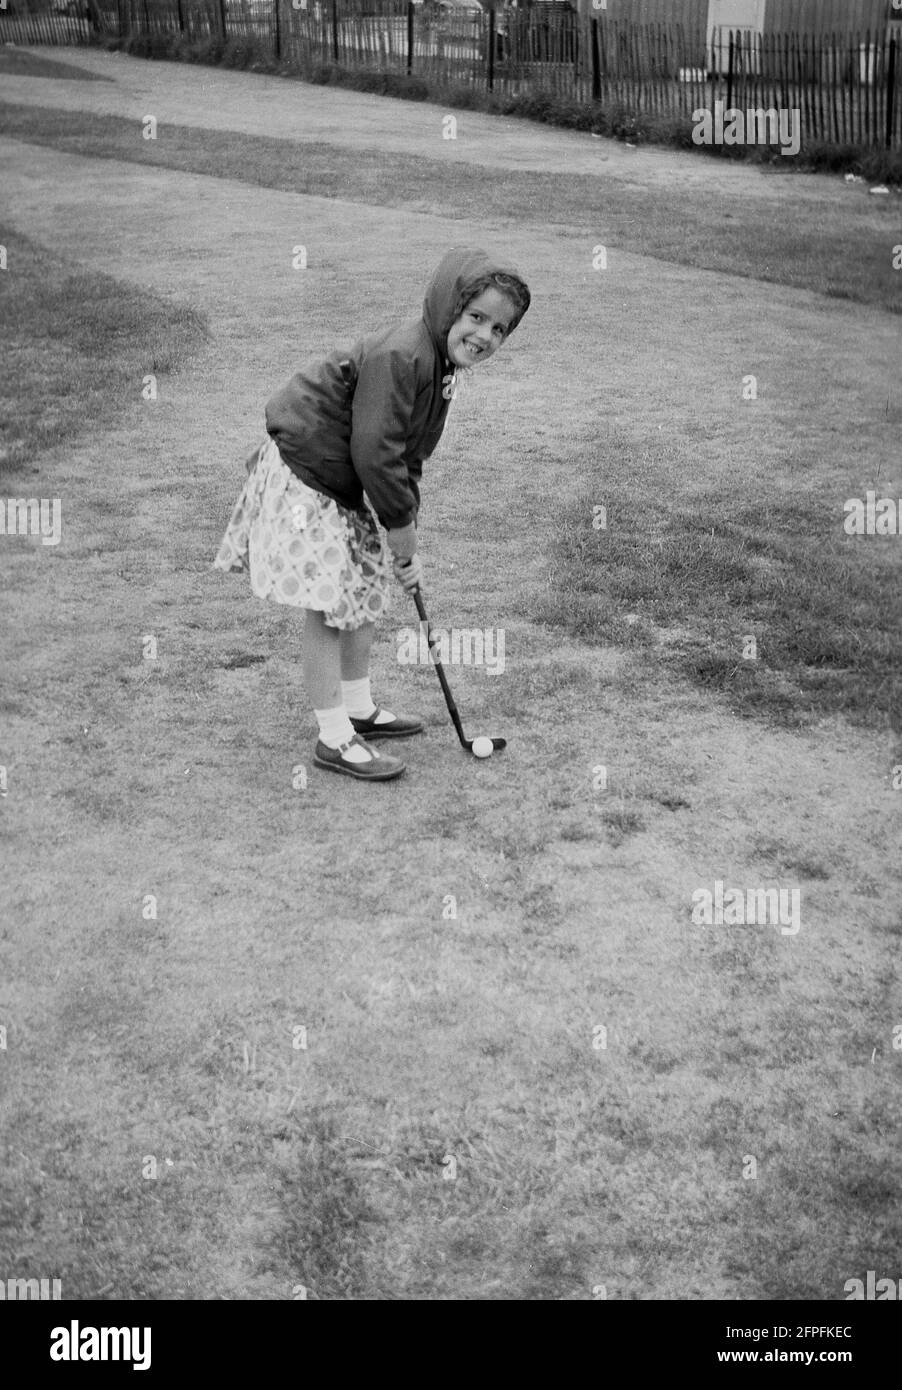 1962, historisch, ein kleines Mädchen in einem Kleid und Anorak, Golf auf einem Putting Course am Meer, Littlehampton, West Sussex, England, Großbritannien. Stockfoto